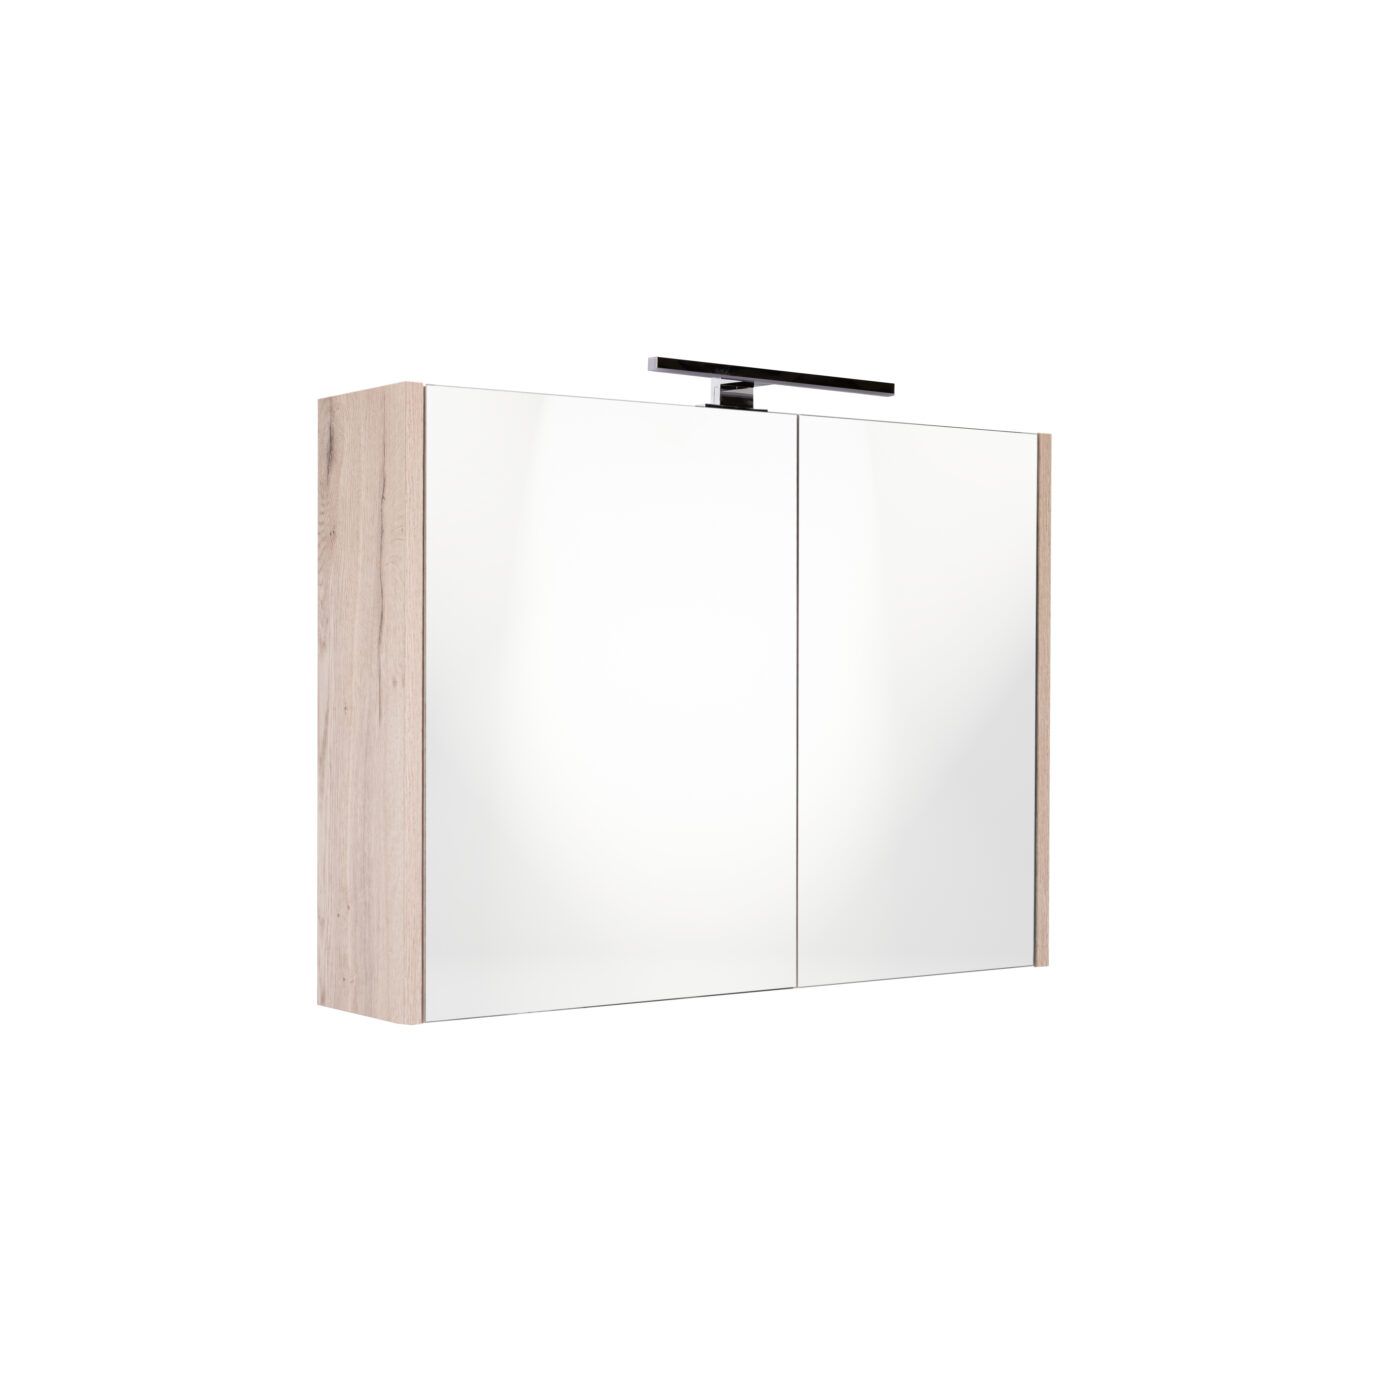 Best Design Happy Halifax spiegelkast met verlichting 60x60 halifax